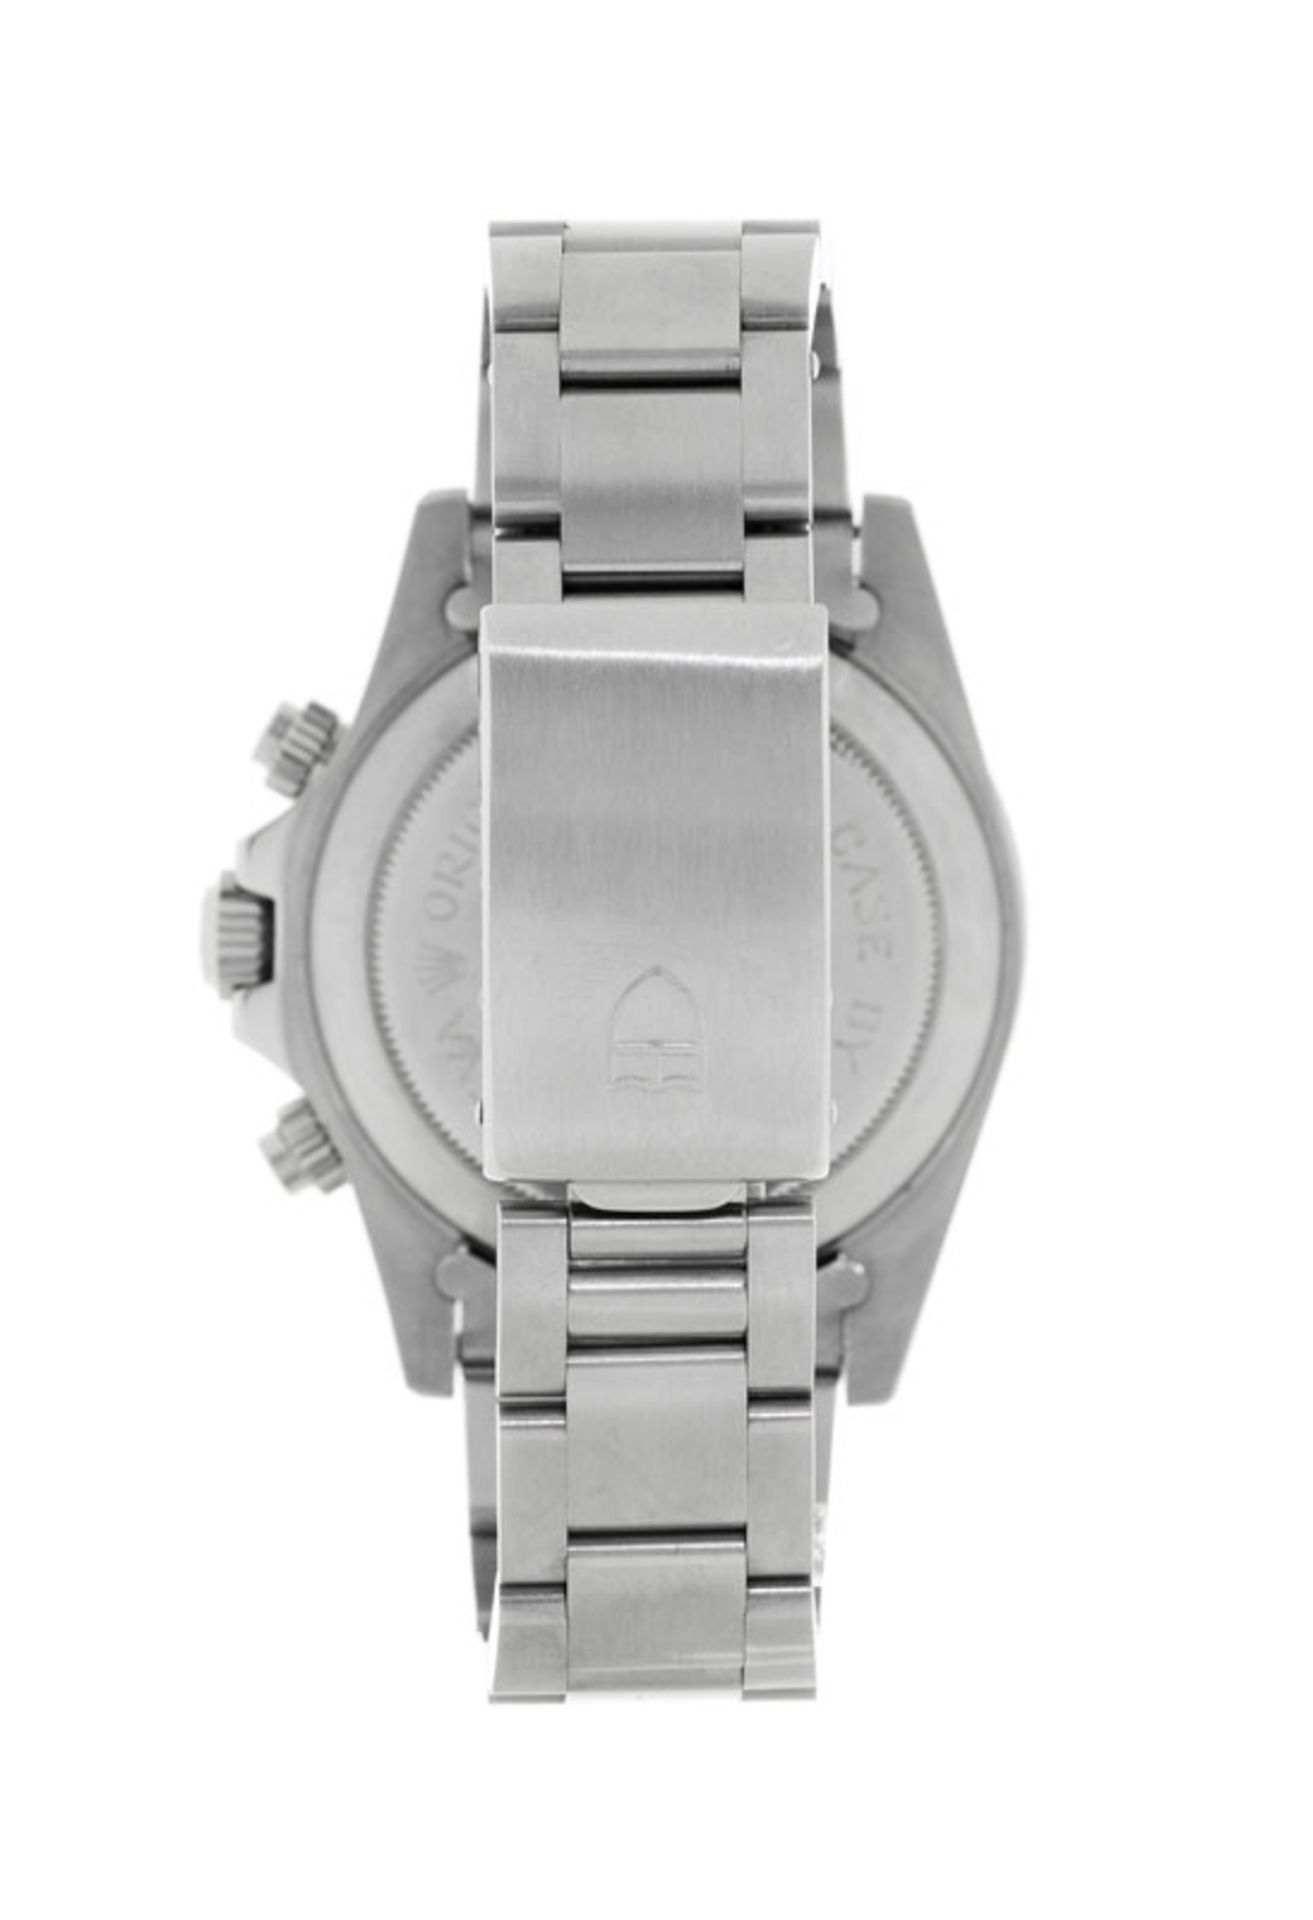 Tudor, Monte Carlo, réf. 7159/0, montre-bracelet chronographe en acier, années 1970, écrinTu - Bild 3 aus 5